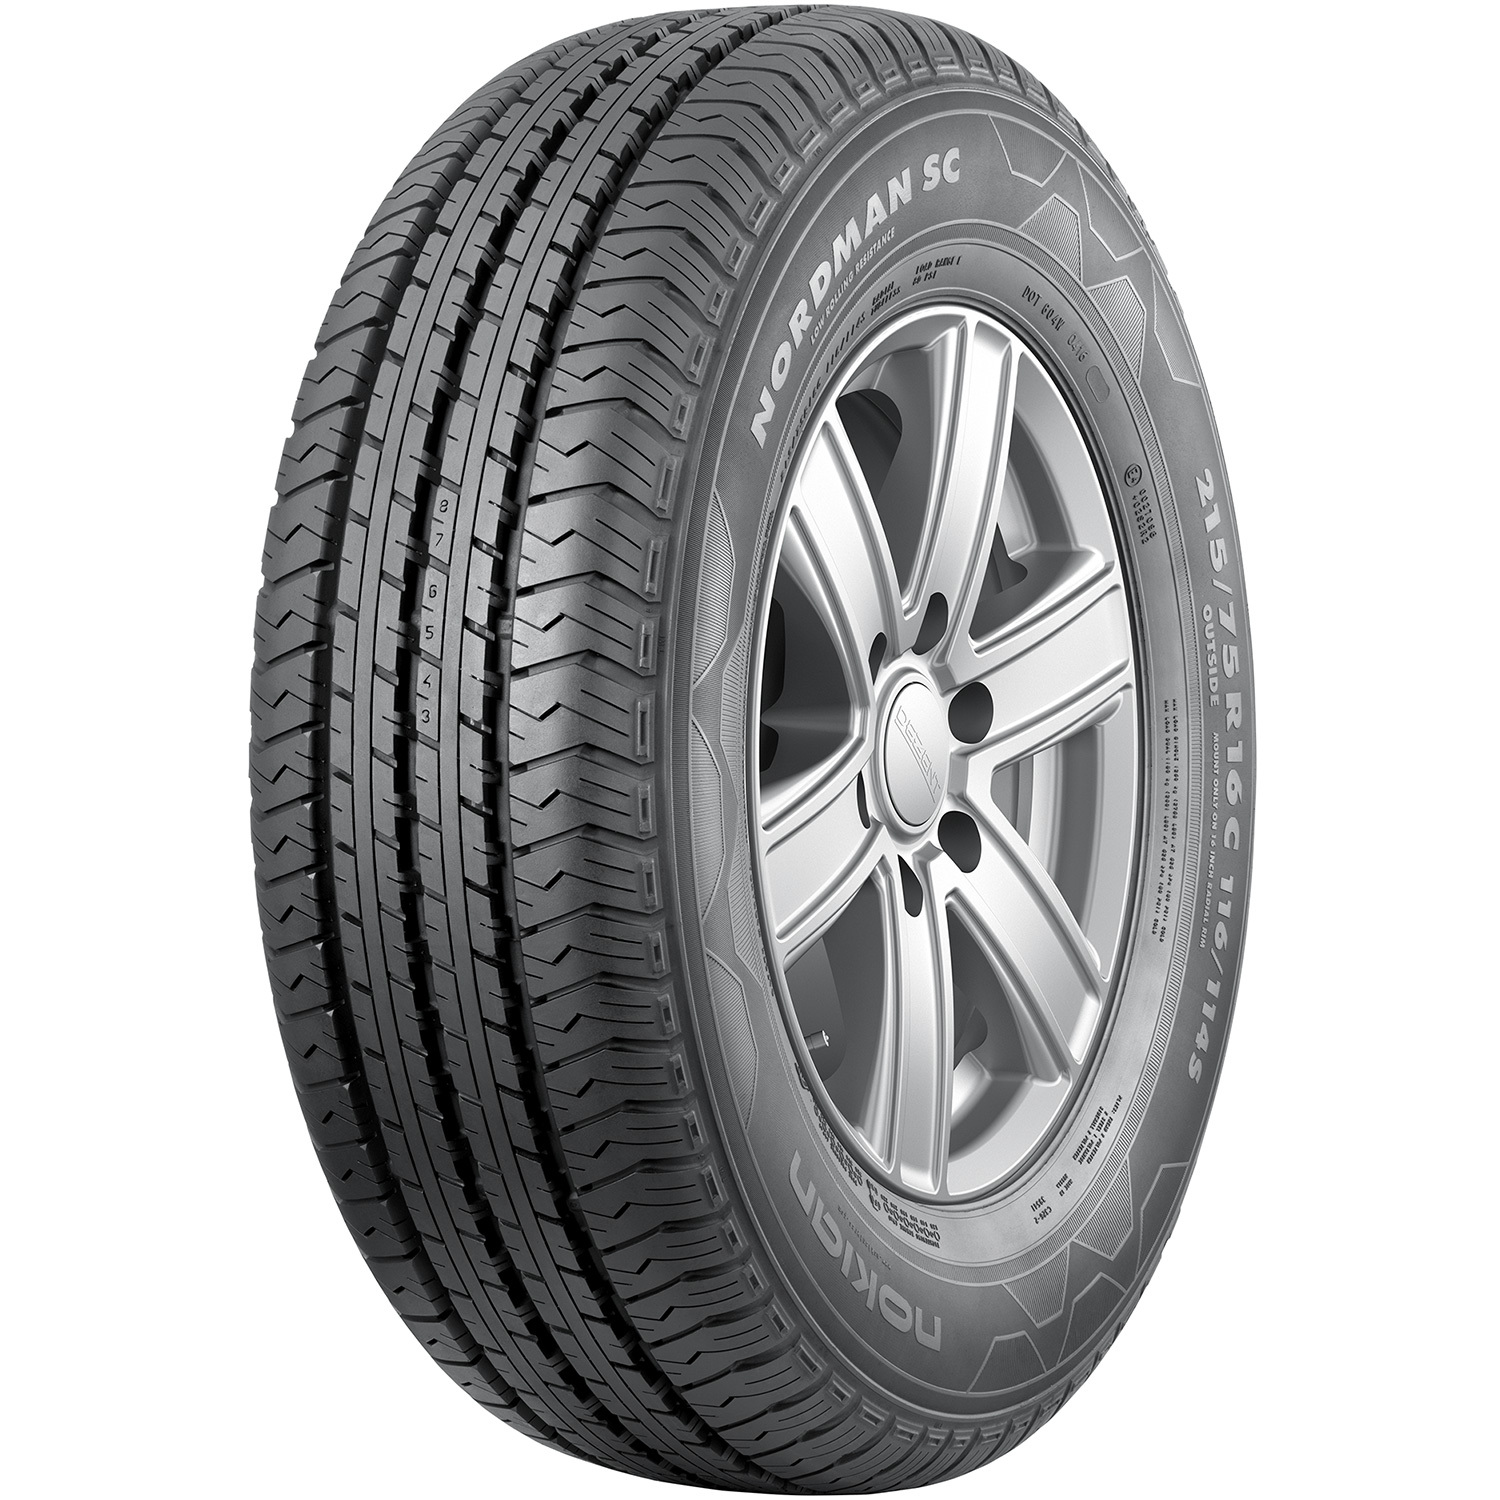 Автомобильная шина Nokian Tyres Nordman SC 185/75 R16C 104S цена и фото